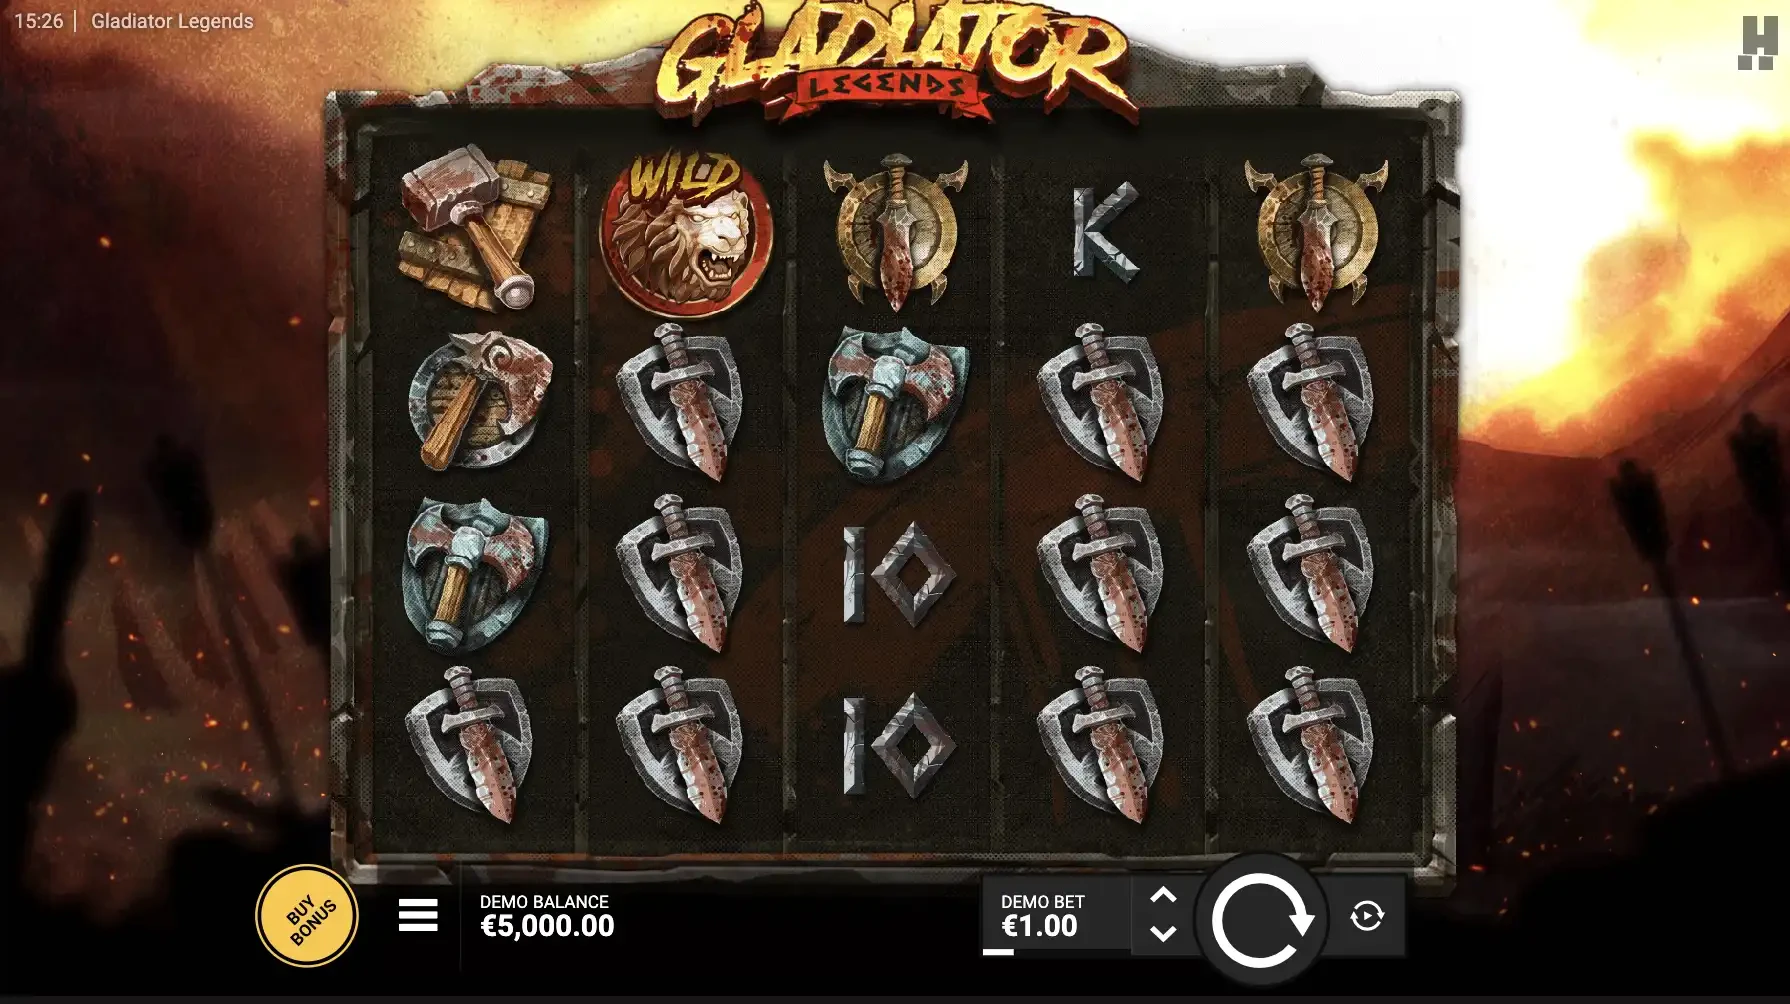 Grille de départ de la machine a sous Gladiator Legends d’Hacksaw Gaming